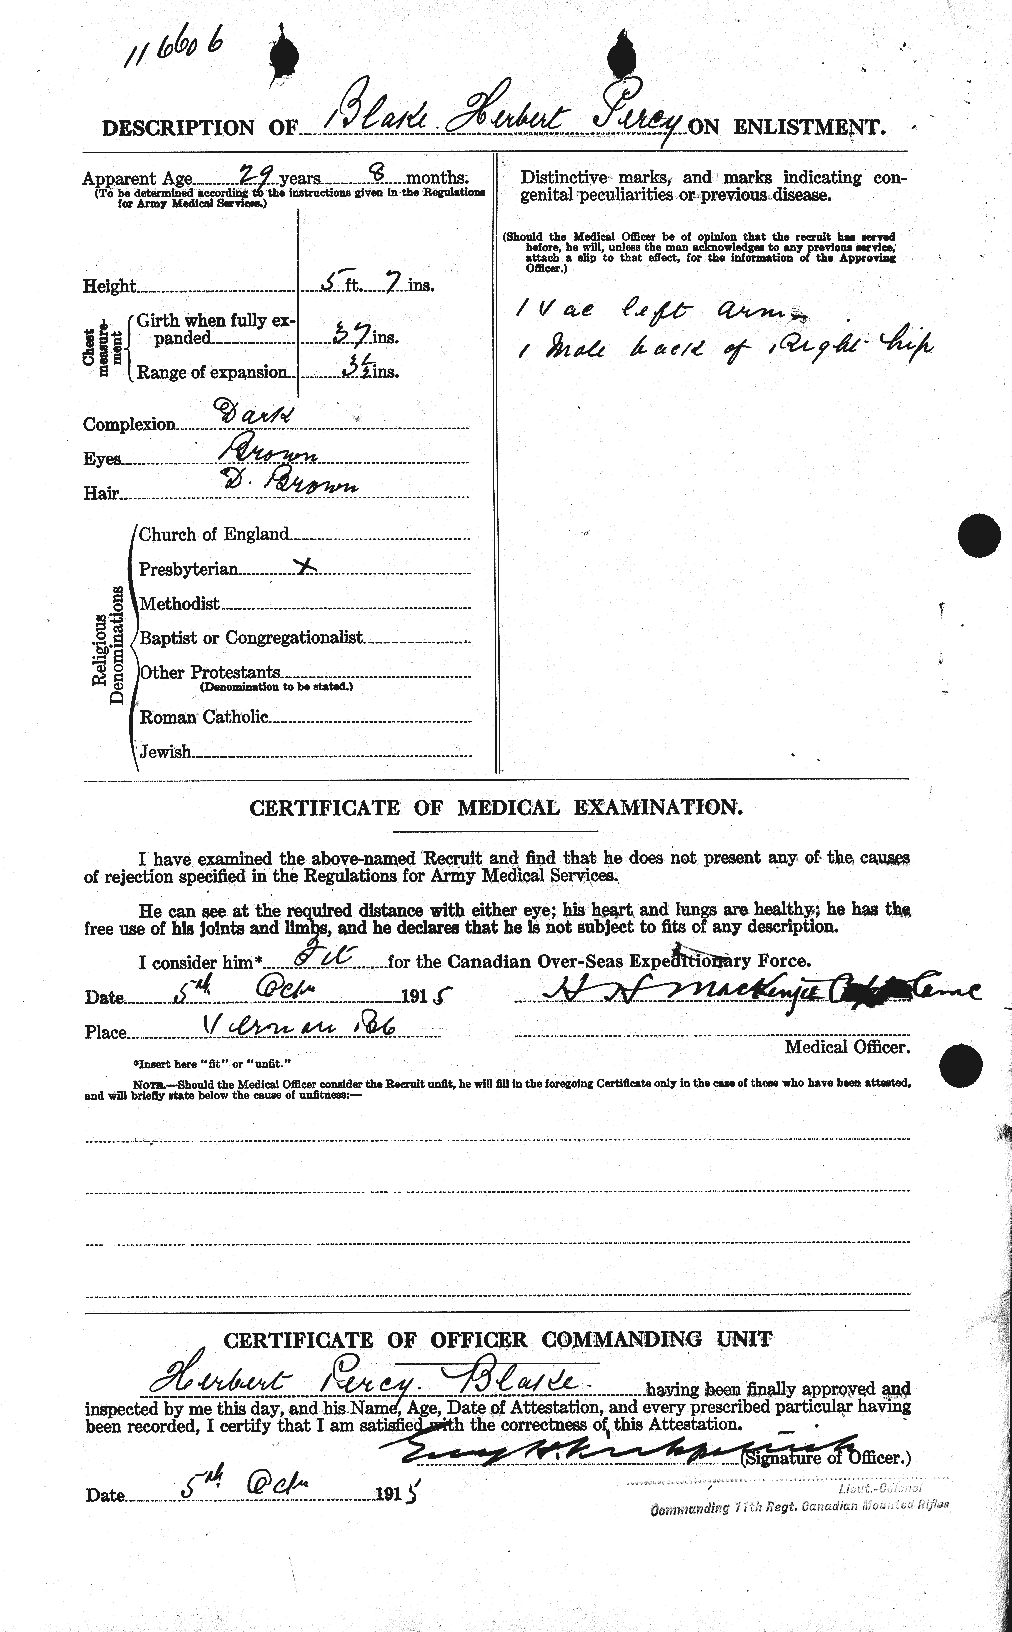 Dossiers du Personnel de la Première Guerre mondiale - CEC 245894b